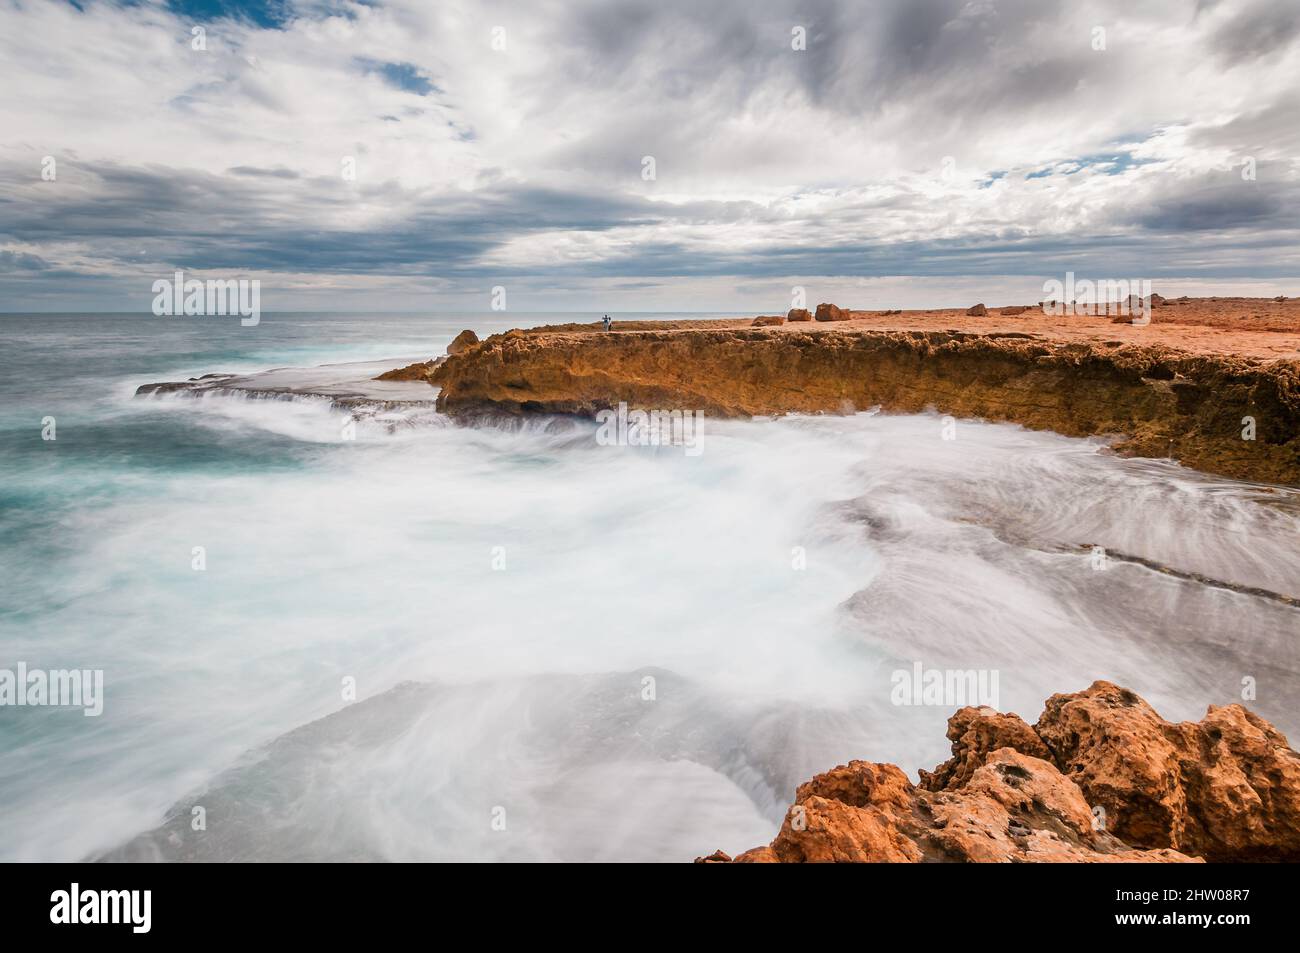 Lunga esposizione con coppia turistica sulla scogliera con acque ruvide sulla costa frastagliata dell'Oceano Indiano alla Stazione di Quobba nell'Australia Occidentale. Foto Stock